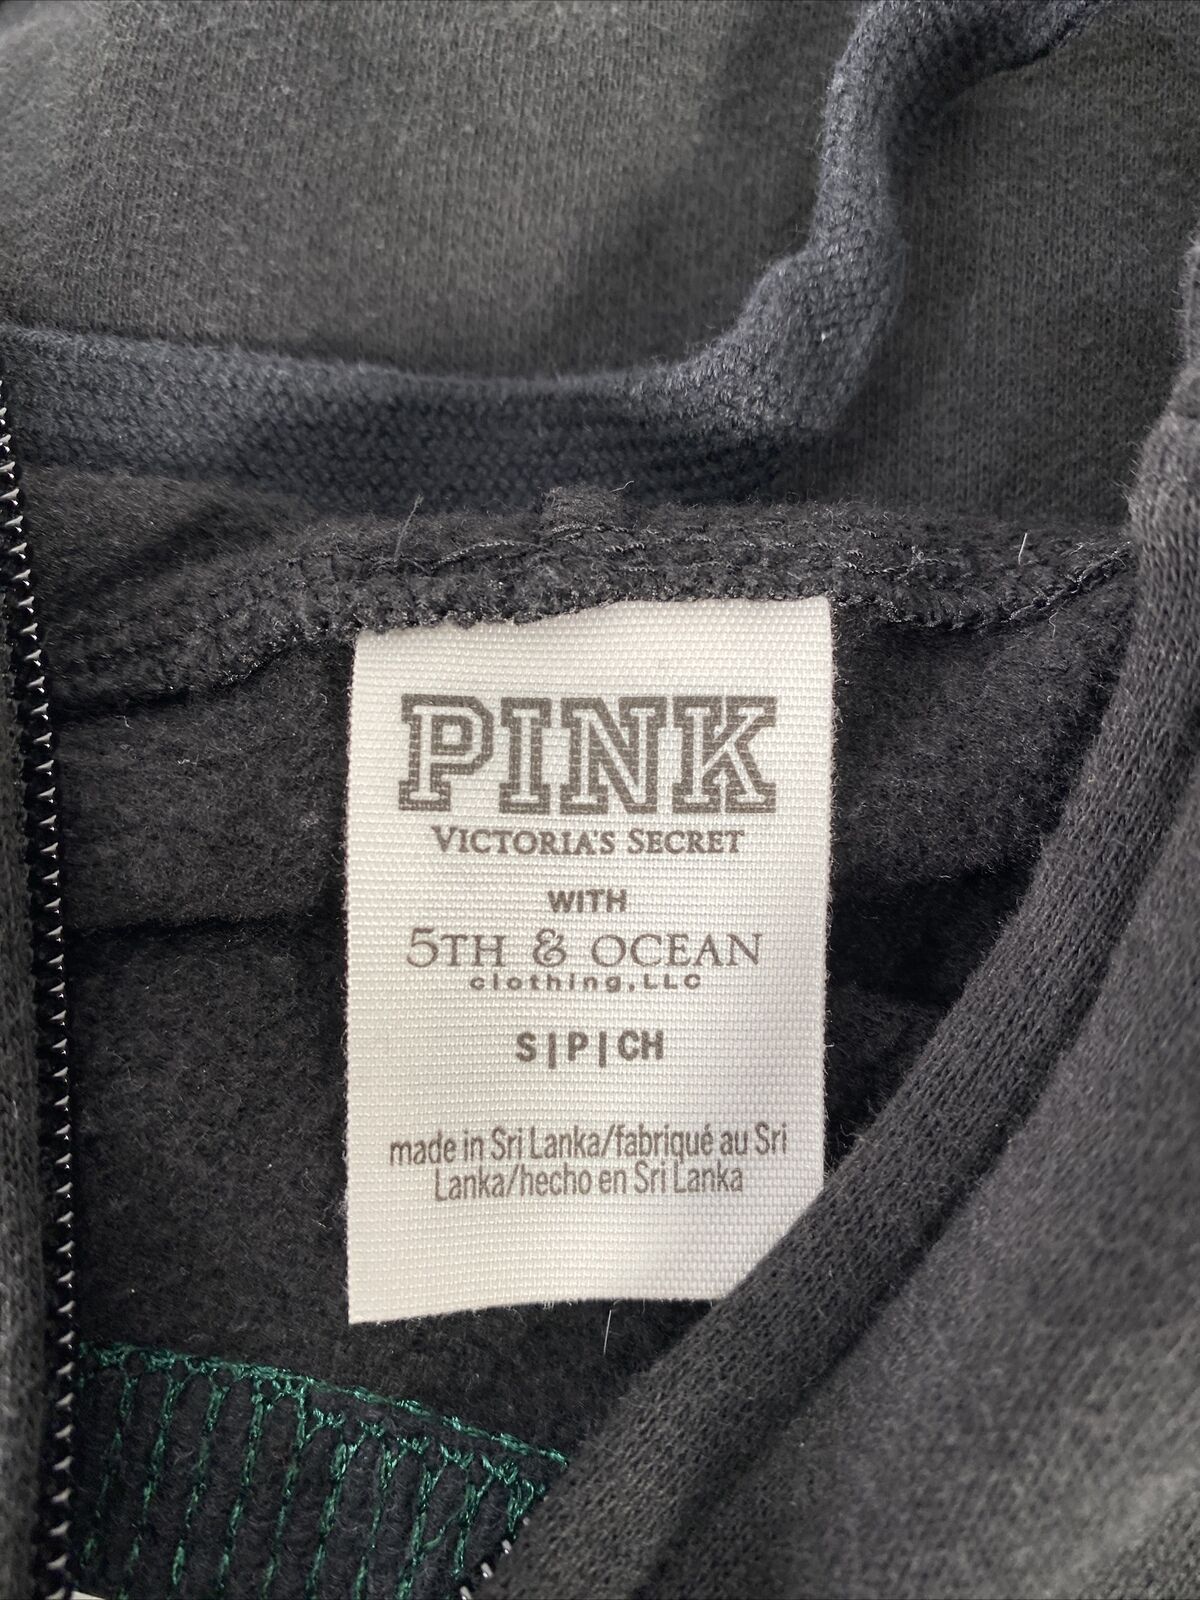 Victoria's Secret PINK Women's Black MSU Sequin Full Zip Sweatshirt Sz S